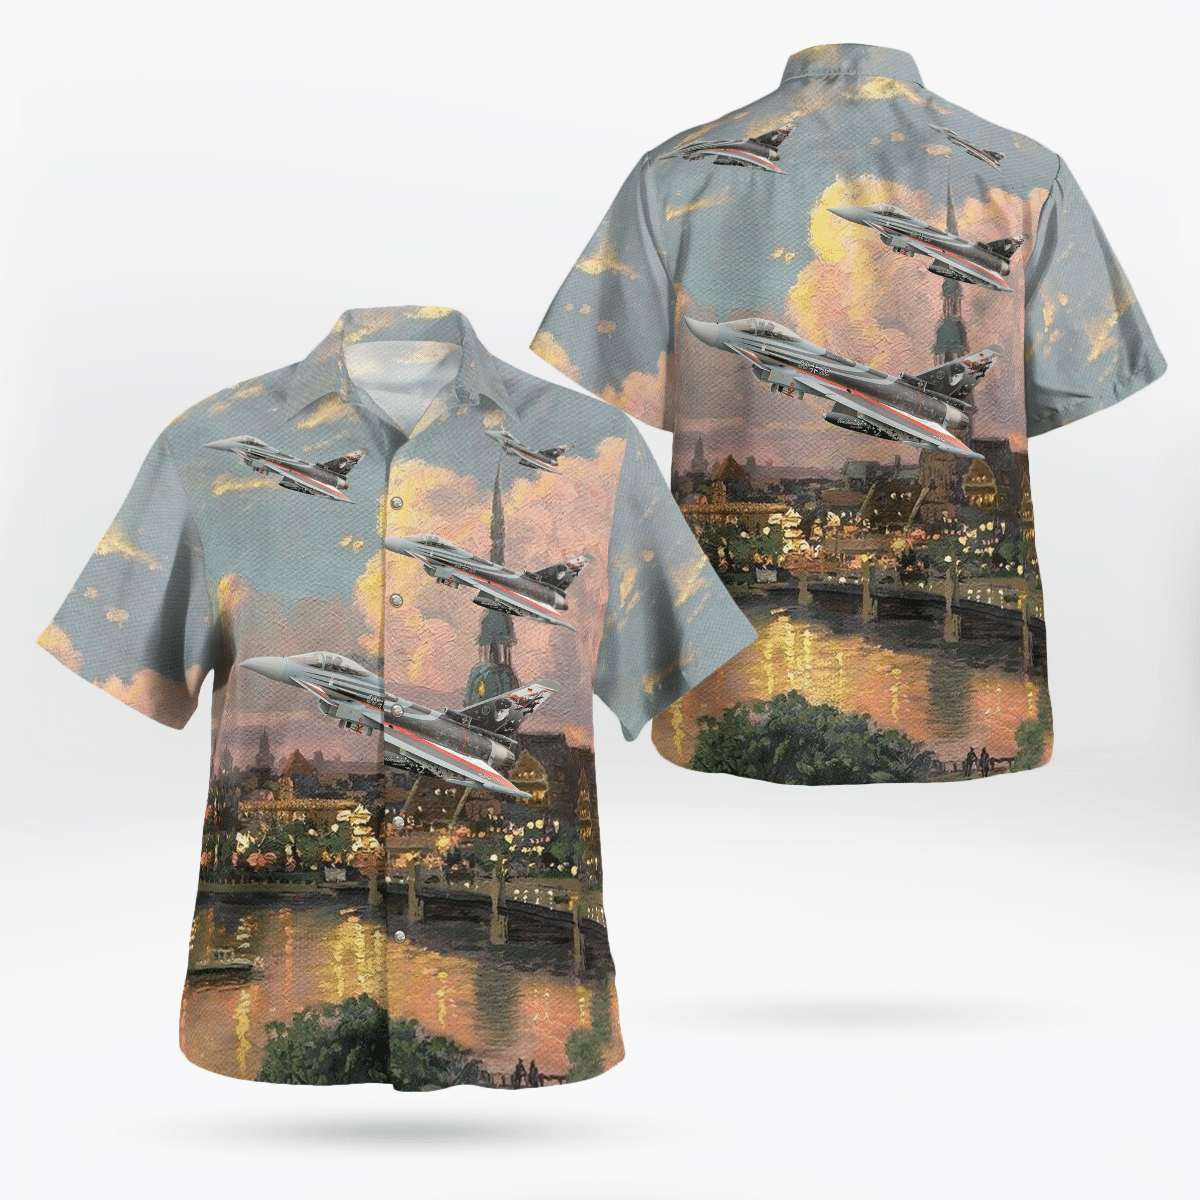 You won't regret buying these Aloha Shirt 97